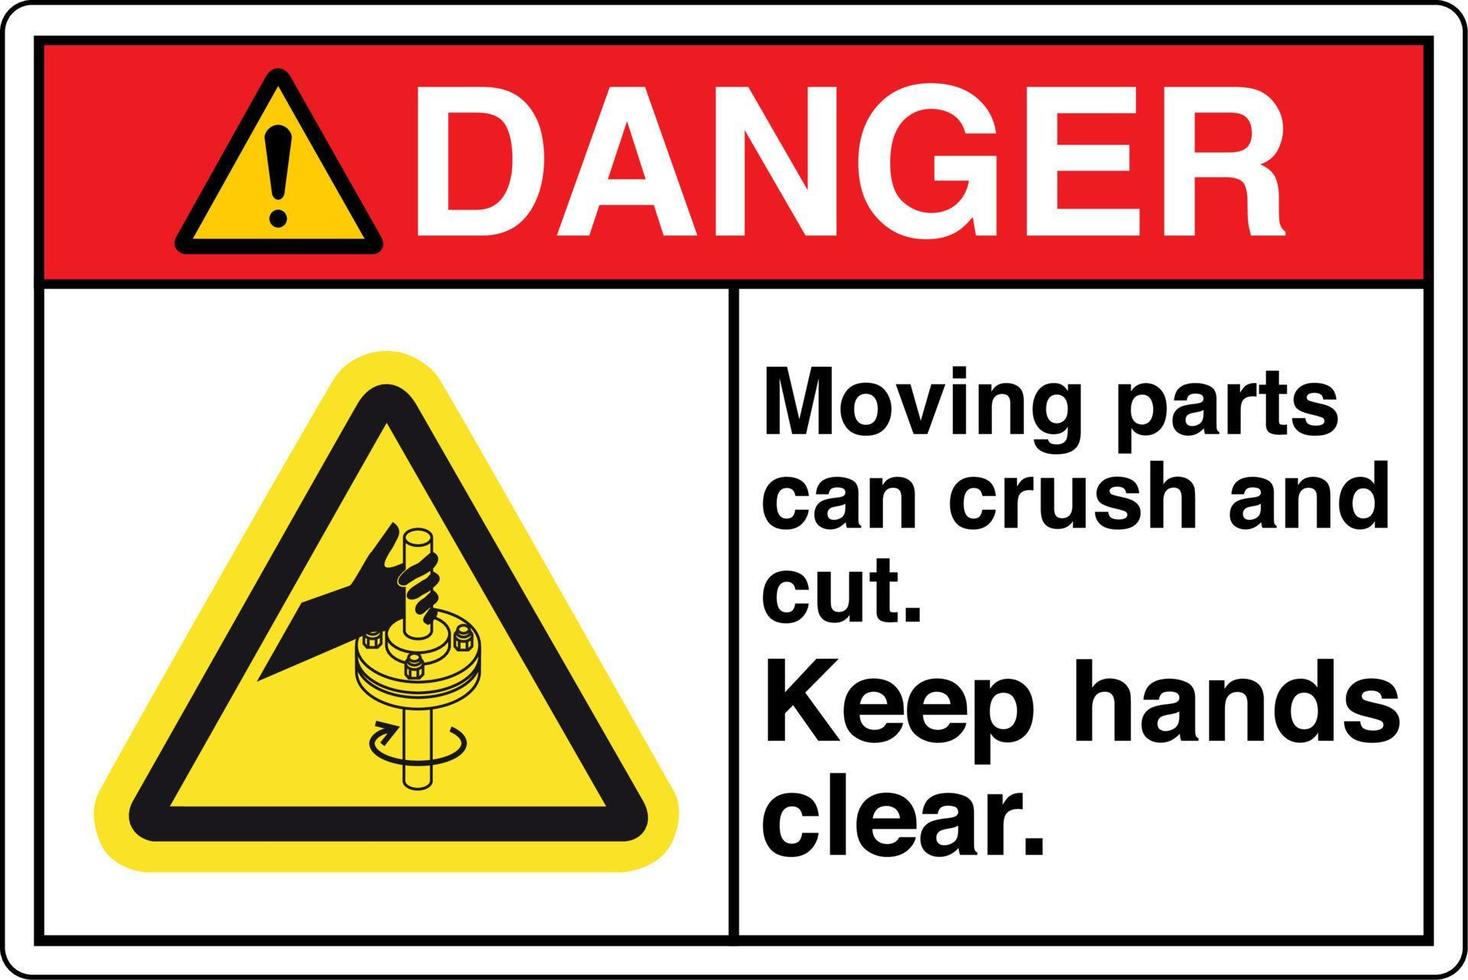 sinal de segurança etiqueta símbolo pictograma perigo peças móveis podem esmagar e cortar mantenha as mãos afastadas vetor